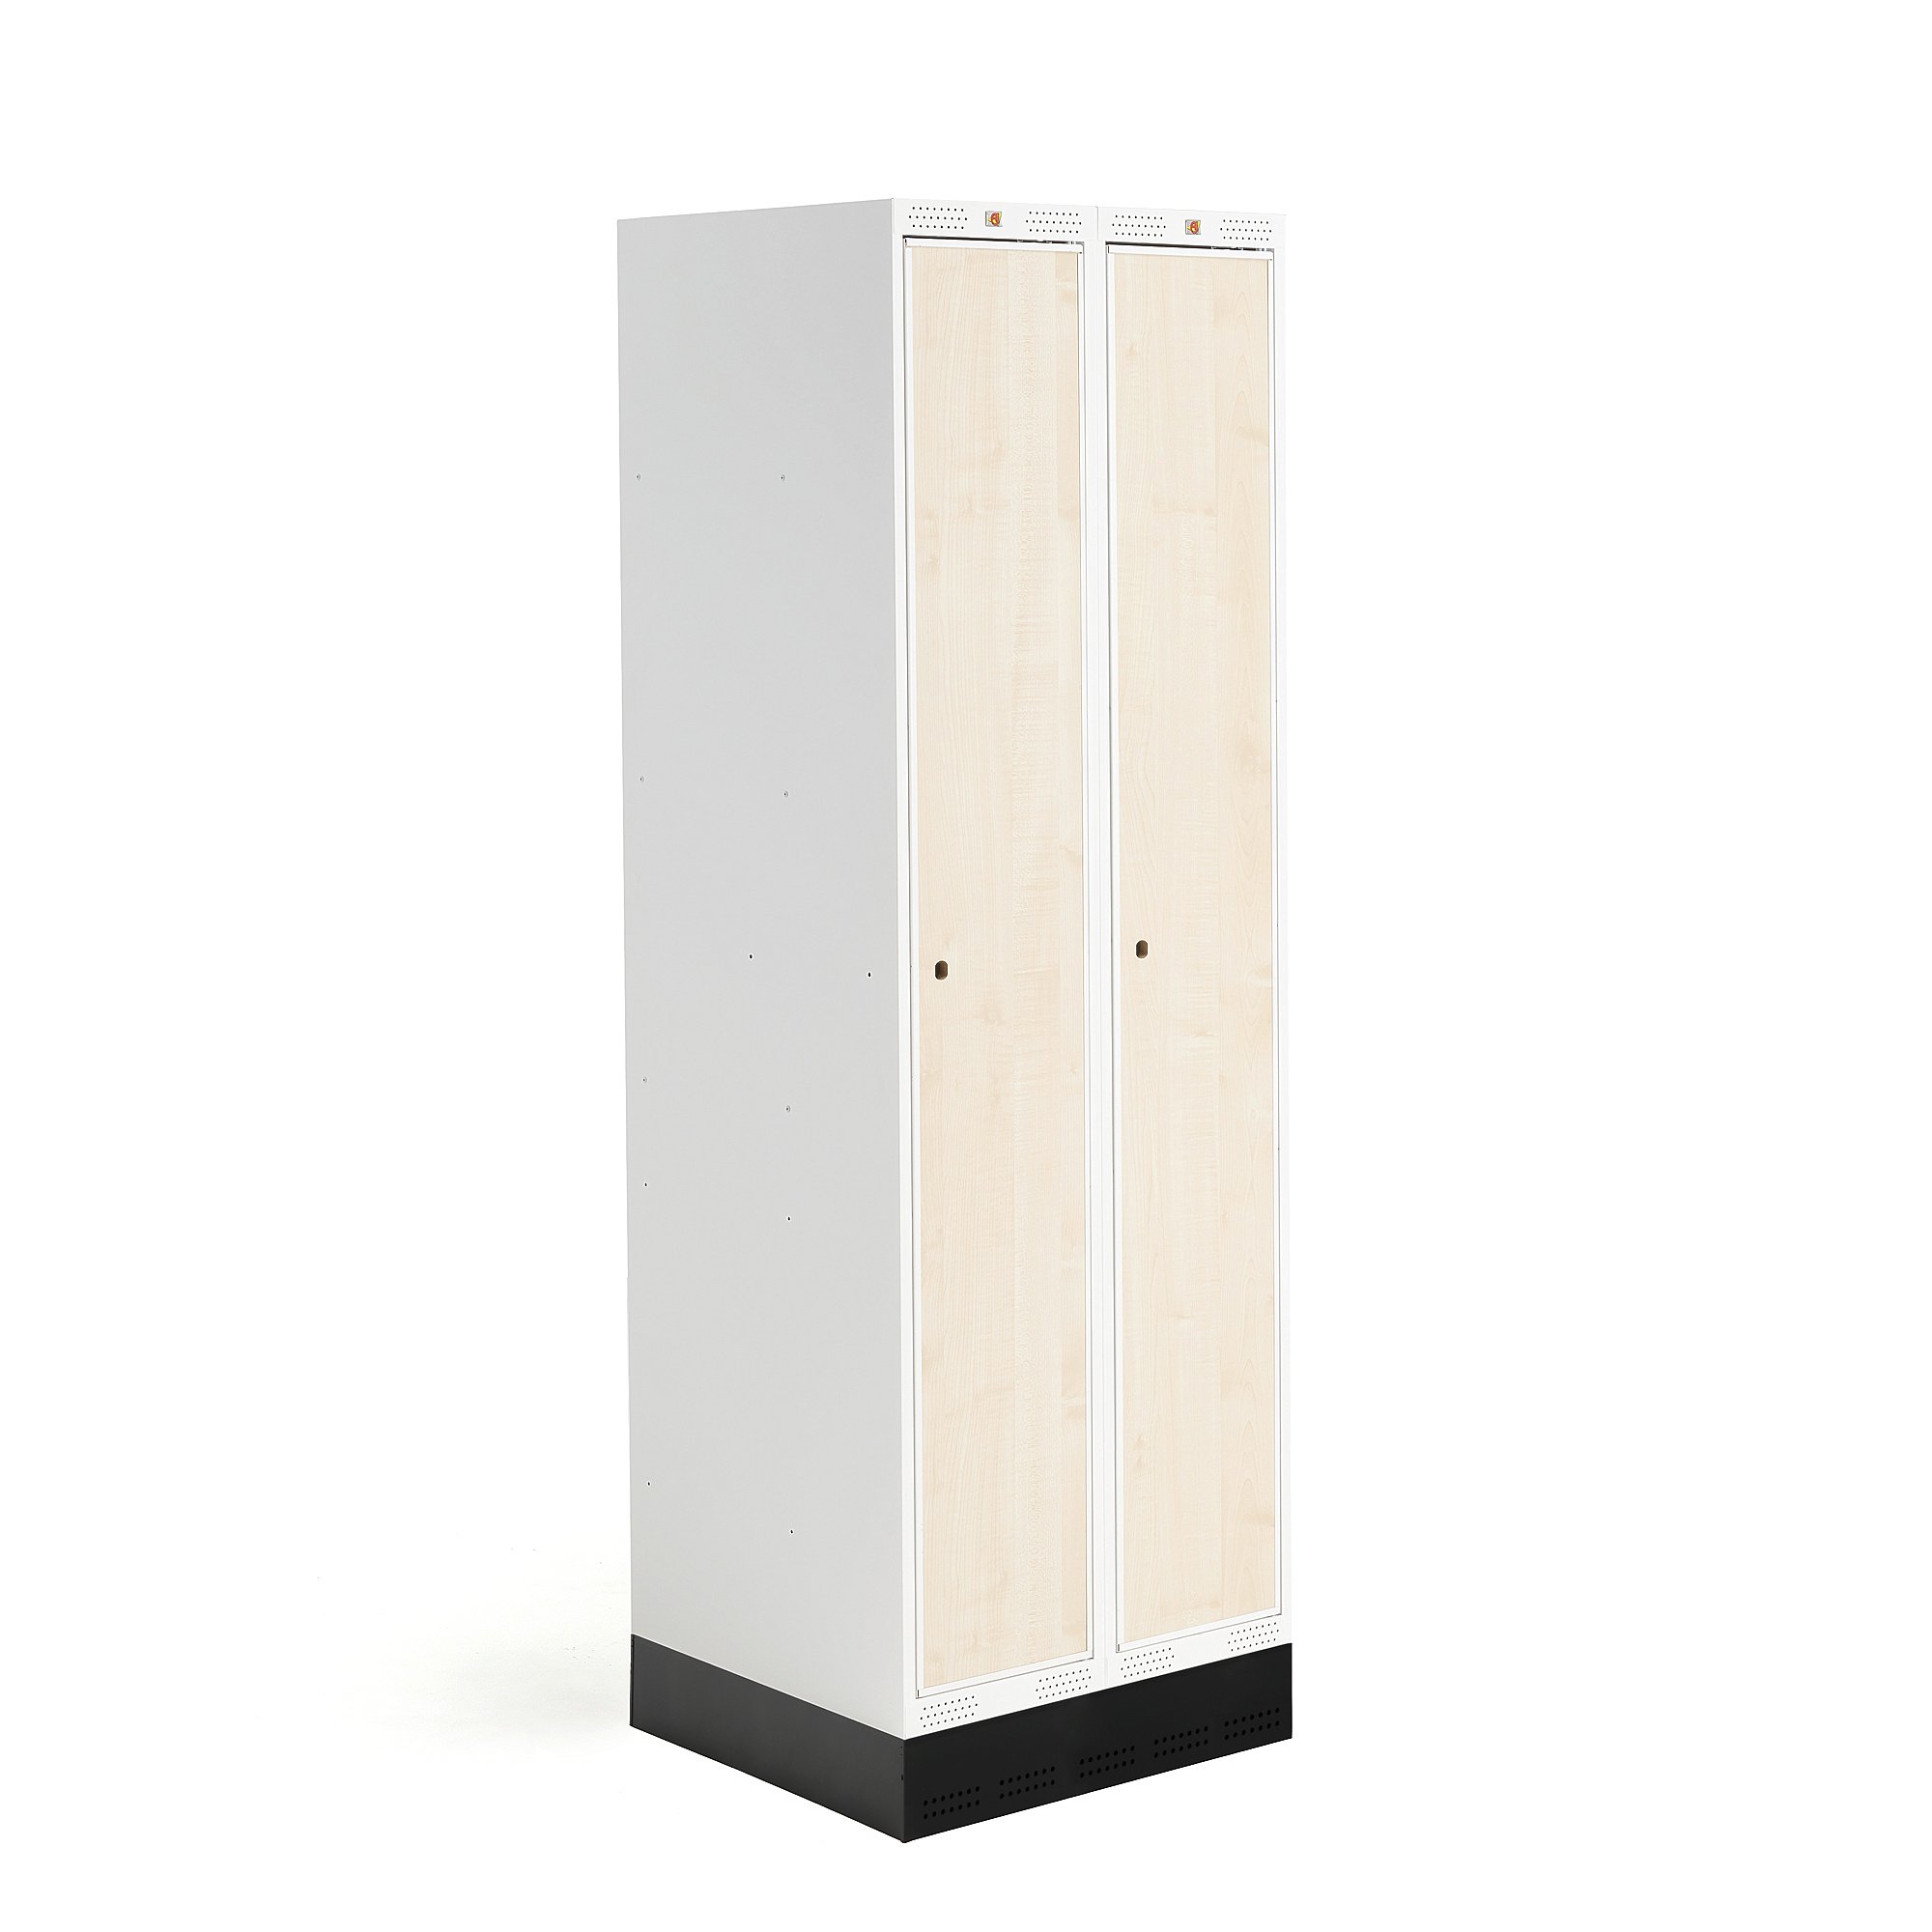 E-shop Školská šatňová skrinka ROZ, 2 sekcie, 2 dvere, 1890x600x550 mm, breza, so soklom